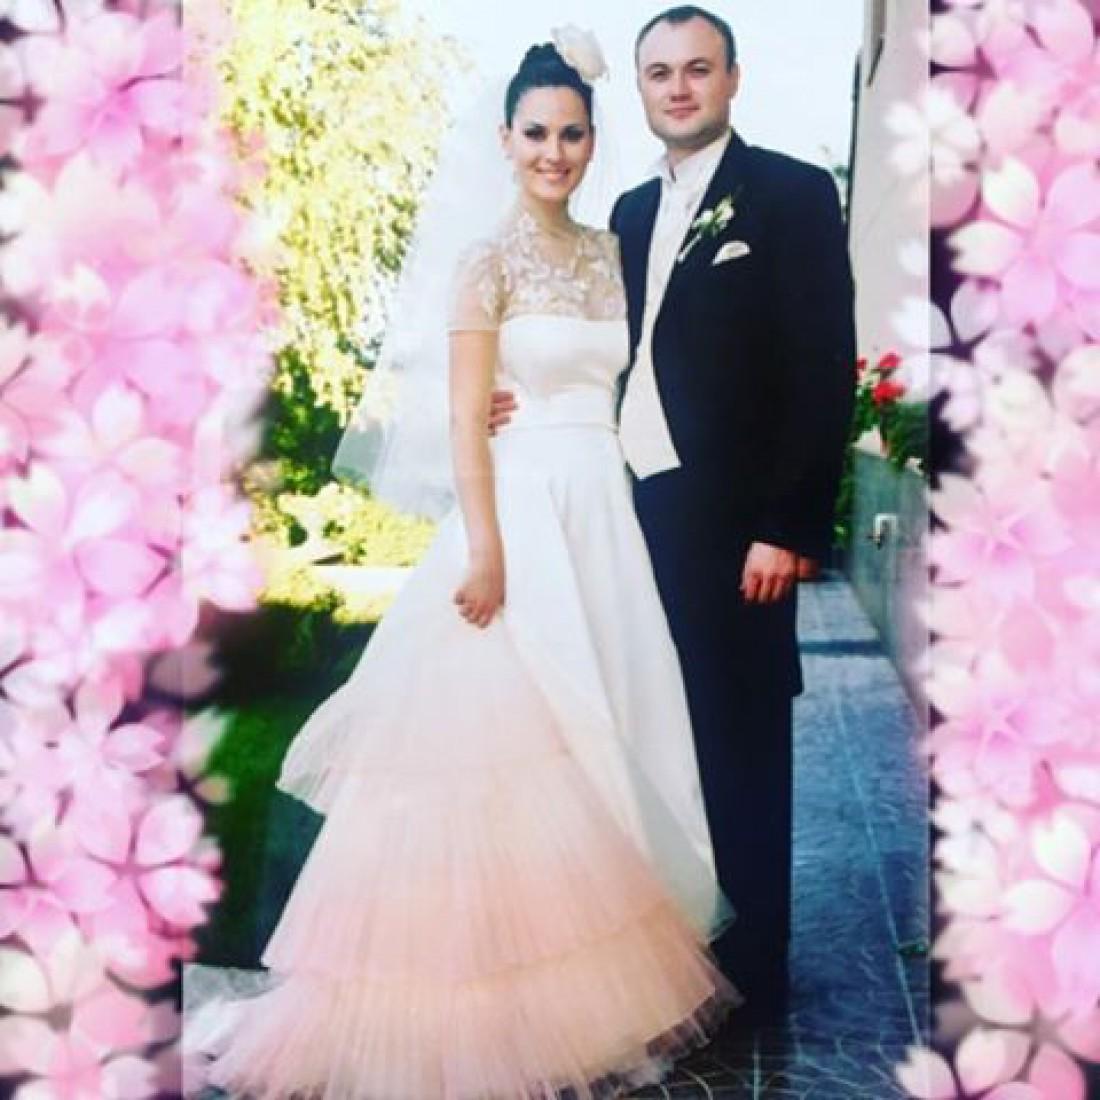 Маша Ефросинина поделилась снимком со своей свадьбы (ФОТО)